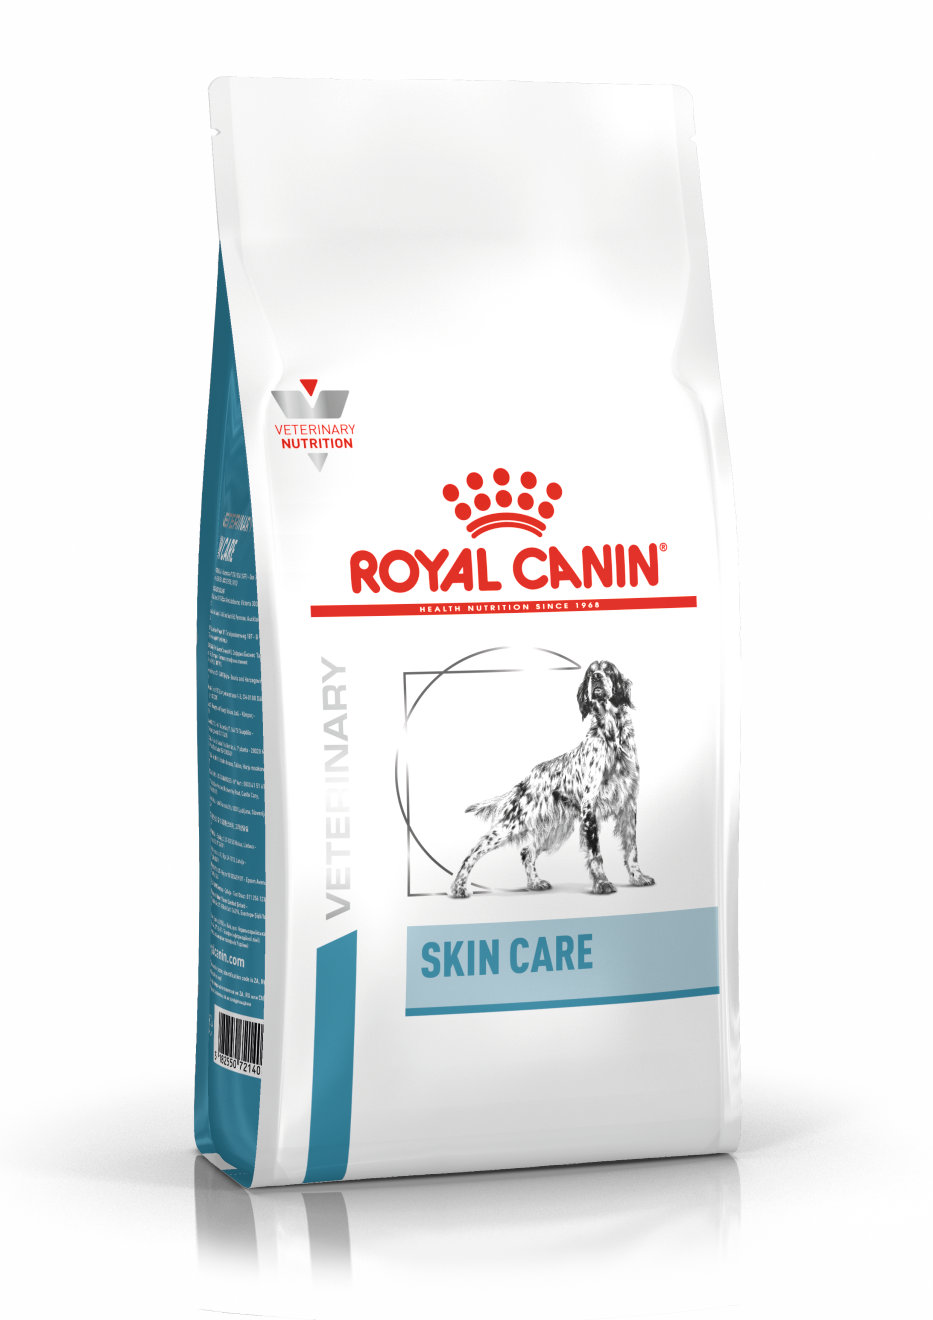 Royal Canin - Skin Care